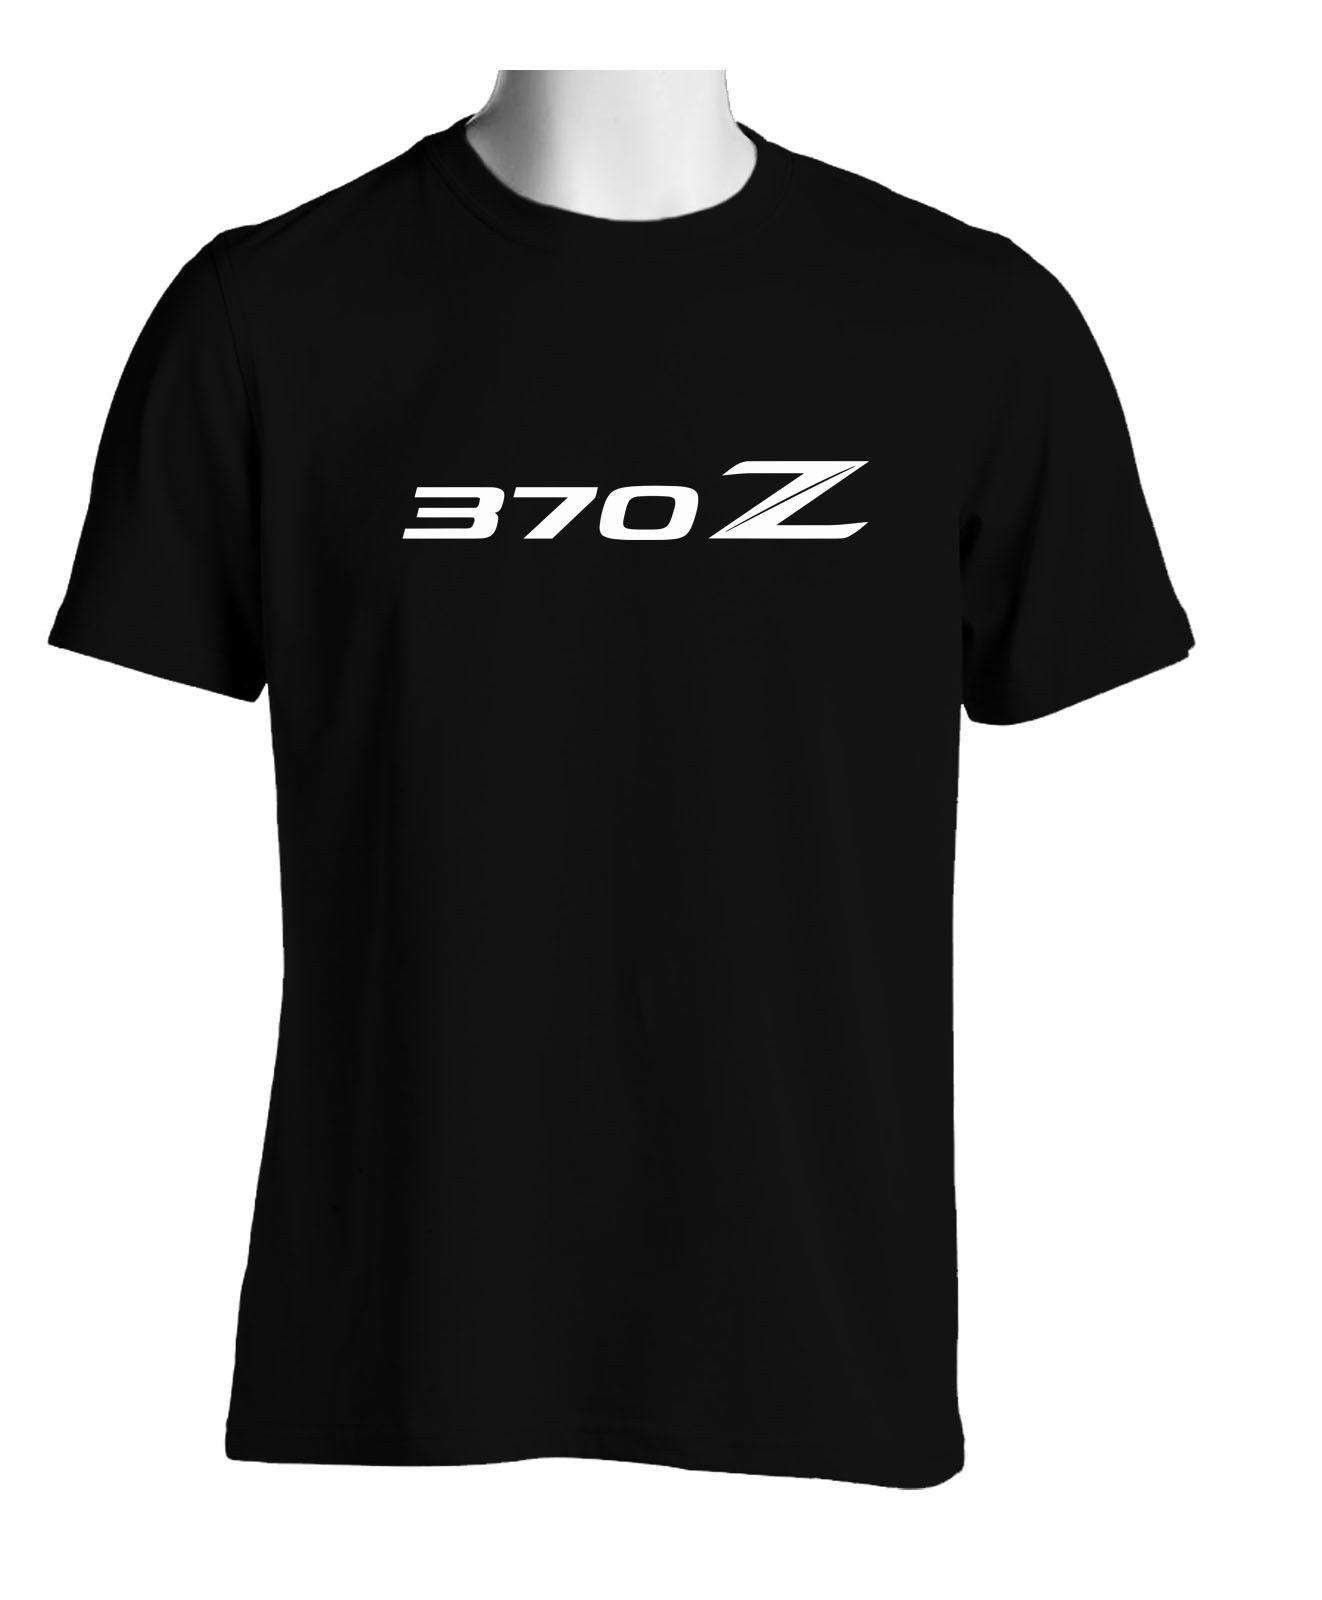 370Z Logo - Black T Shirts Nissan 370z Logo Men'S Size S To 3XL Funny Slogan T